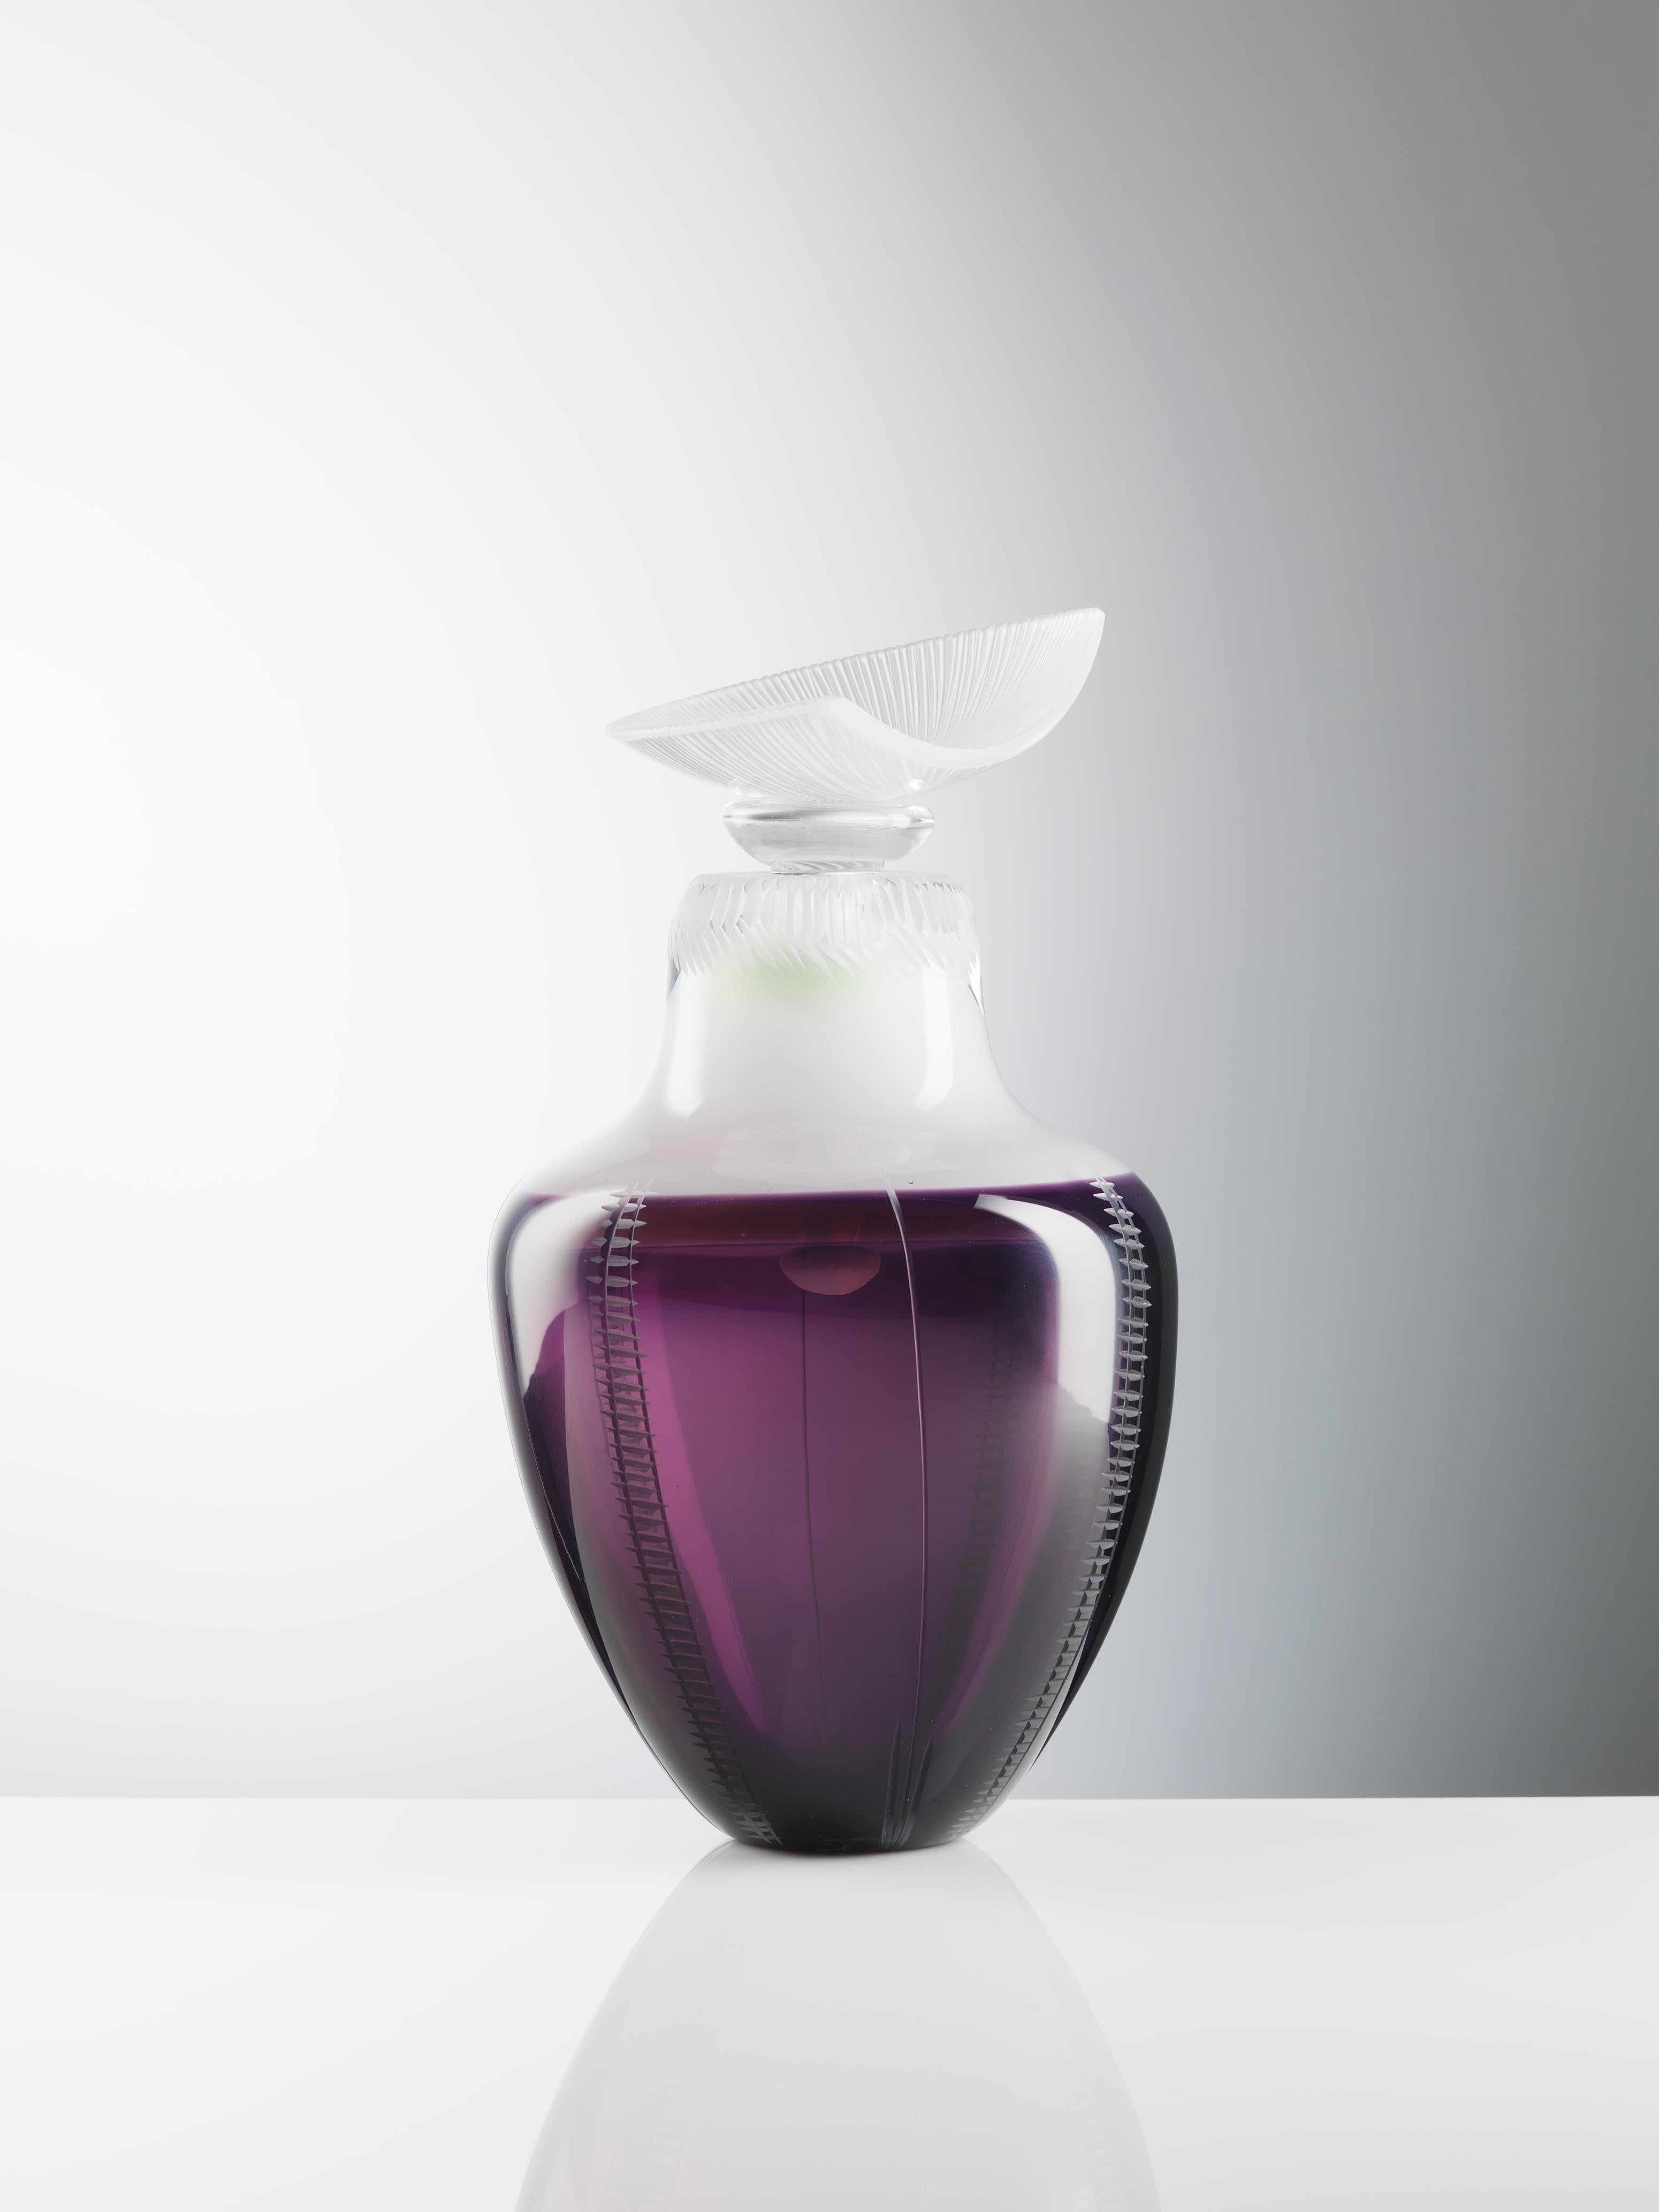 Scottish Indigo Blown Glass Vase Handmade by Juli Bolaños-Durman